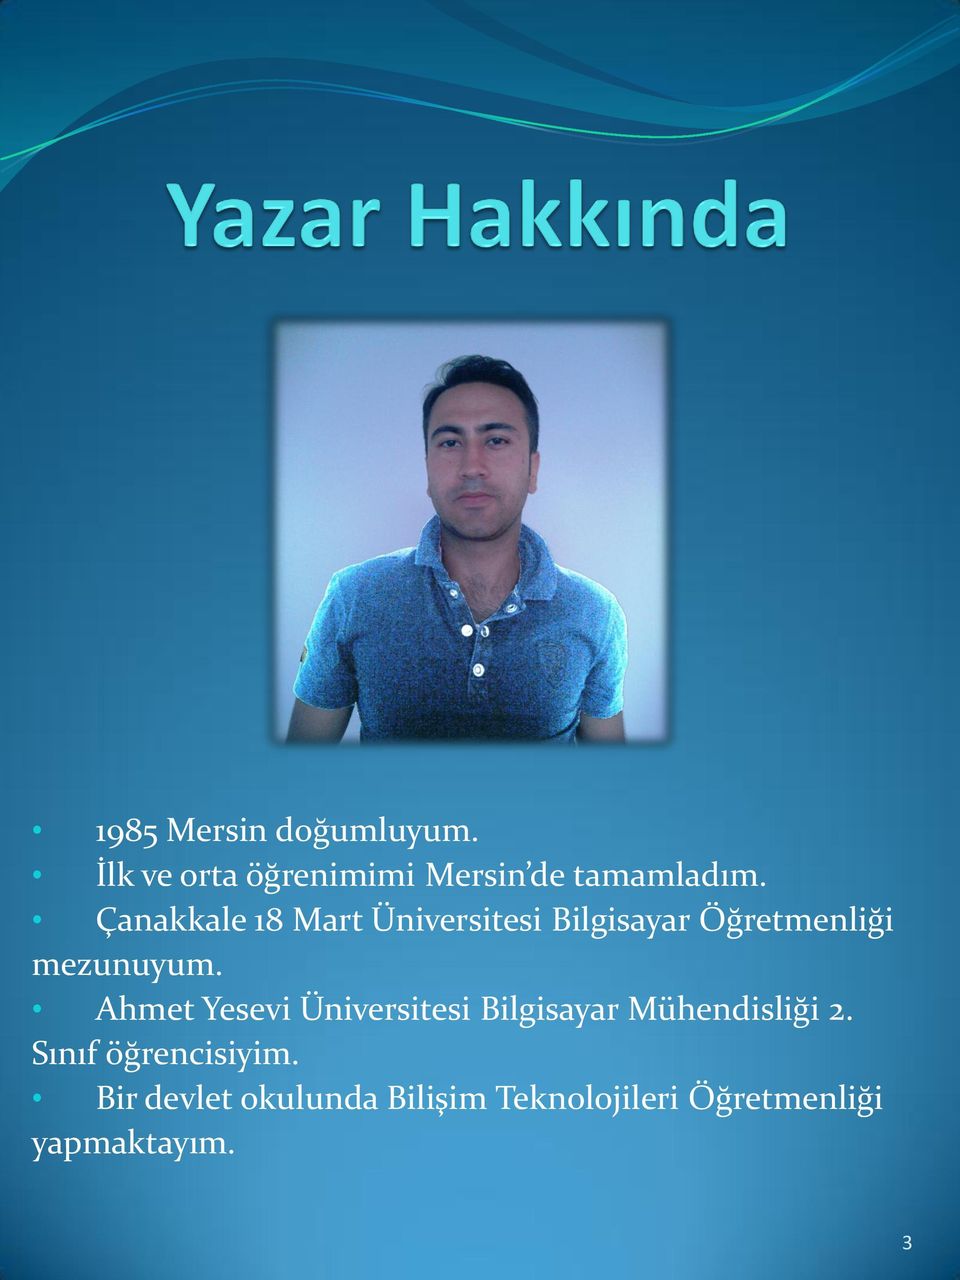 Ahmet Yesevi Üniversitesi Bilgisayar Mühendisliği 2.